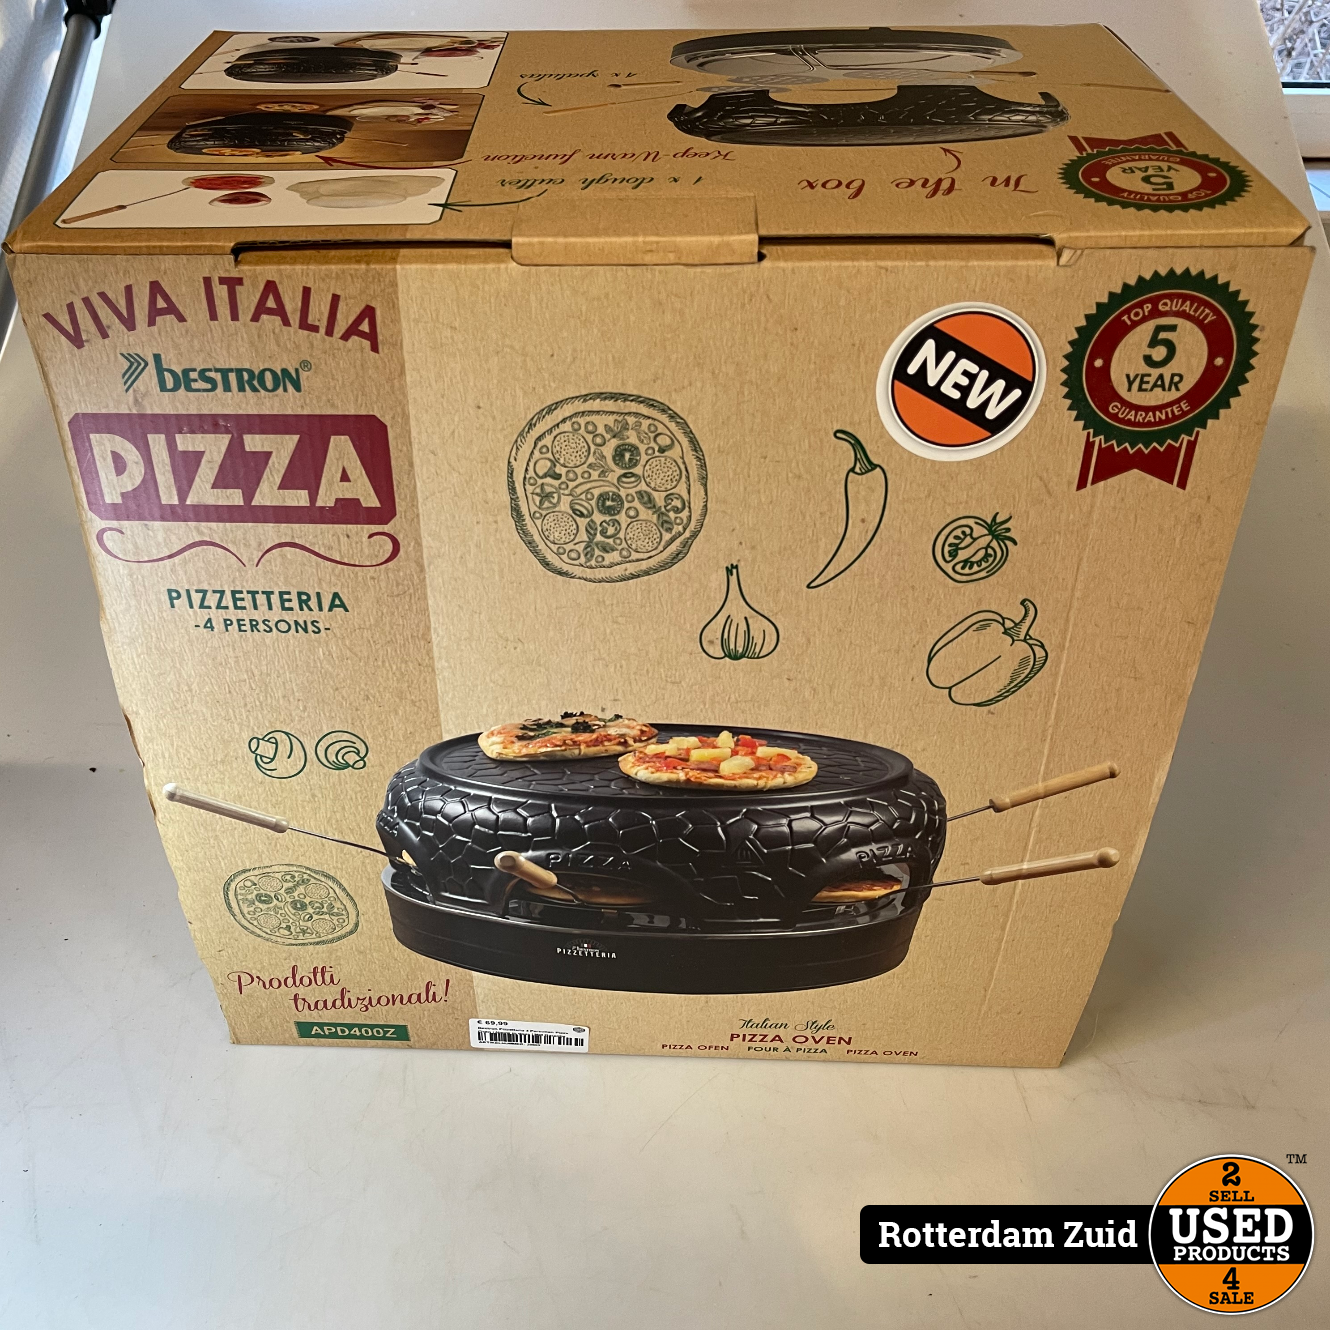 Email verband Negen Bestron Pizzetteria 4 Personen Pizza Oven | Nieuw in doos | Met Garantie -  Used Products Rotterdam Zuid